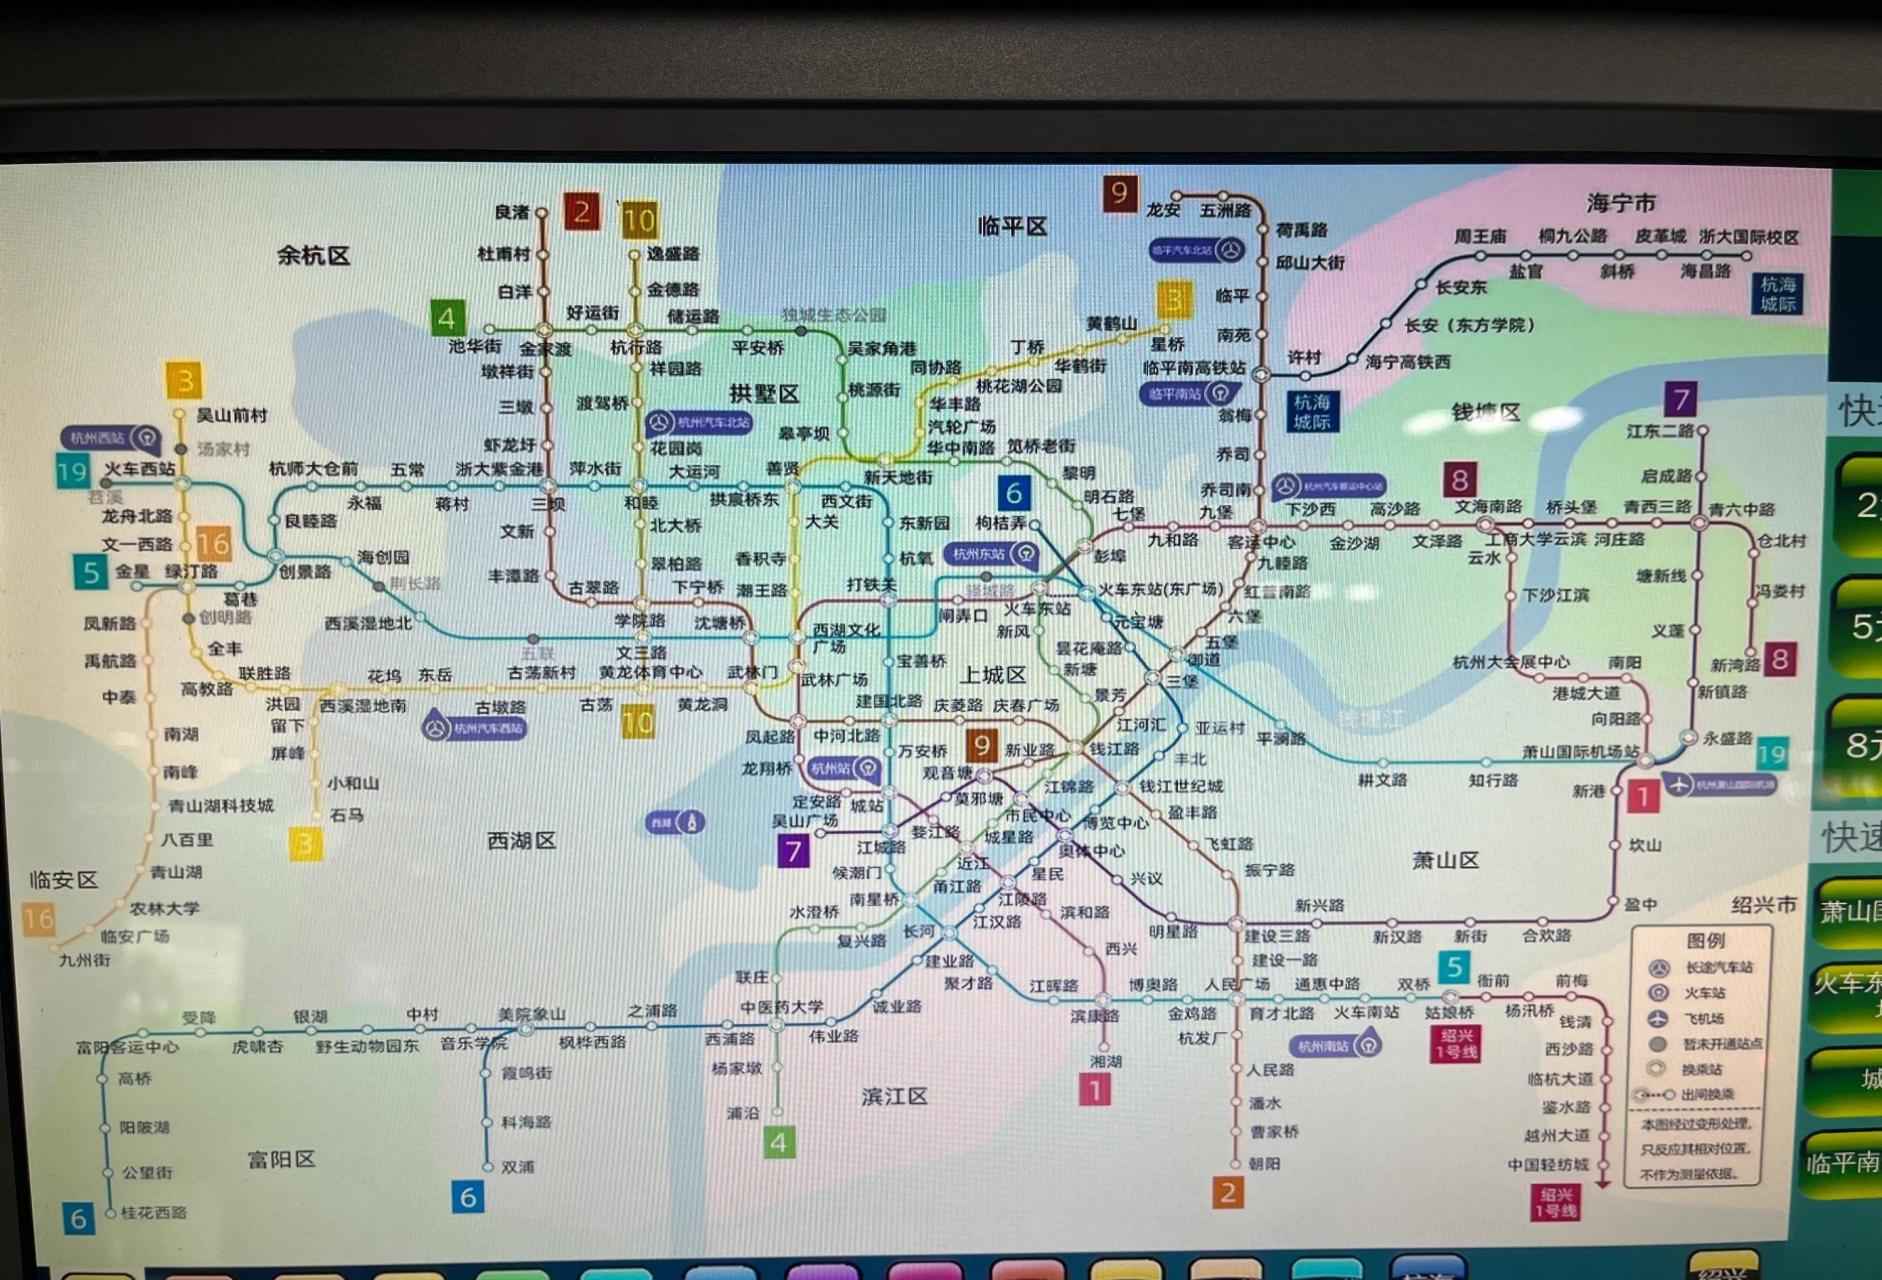 看了杭州的地铁线路规划,看得出来杭州哪里比较热闹一点吗?